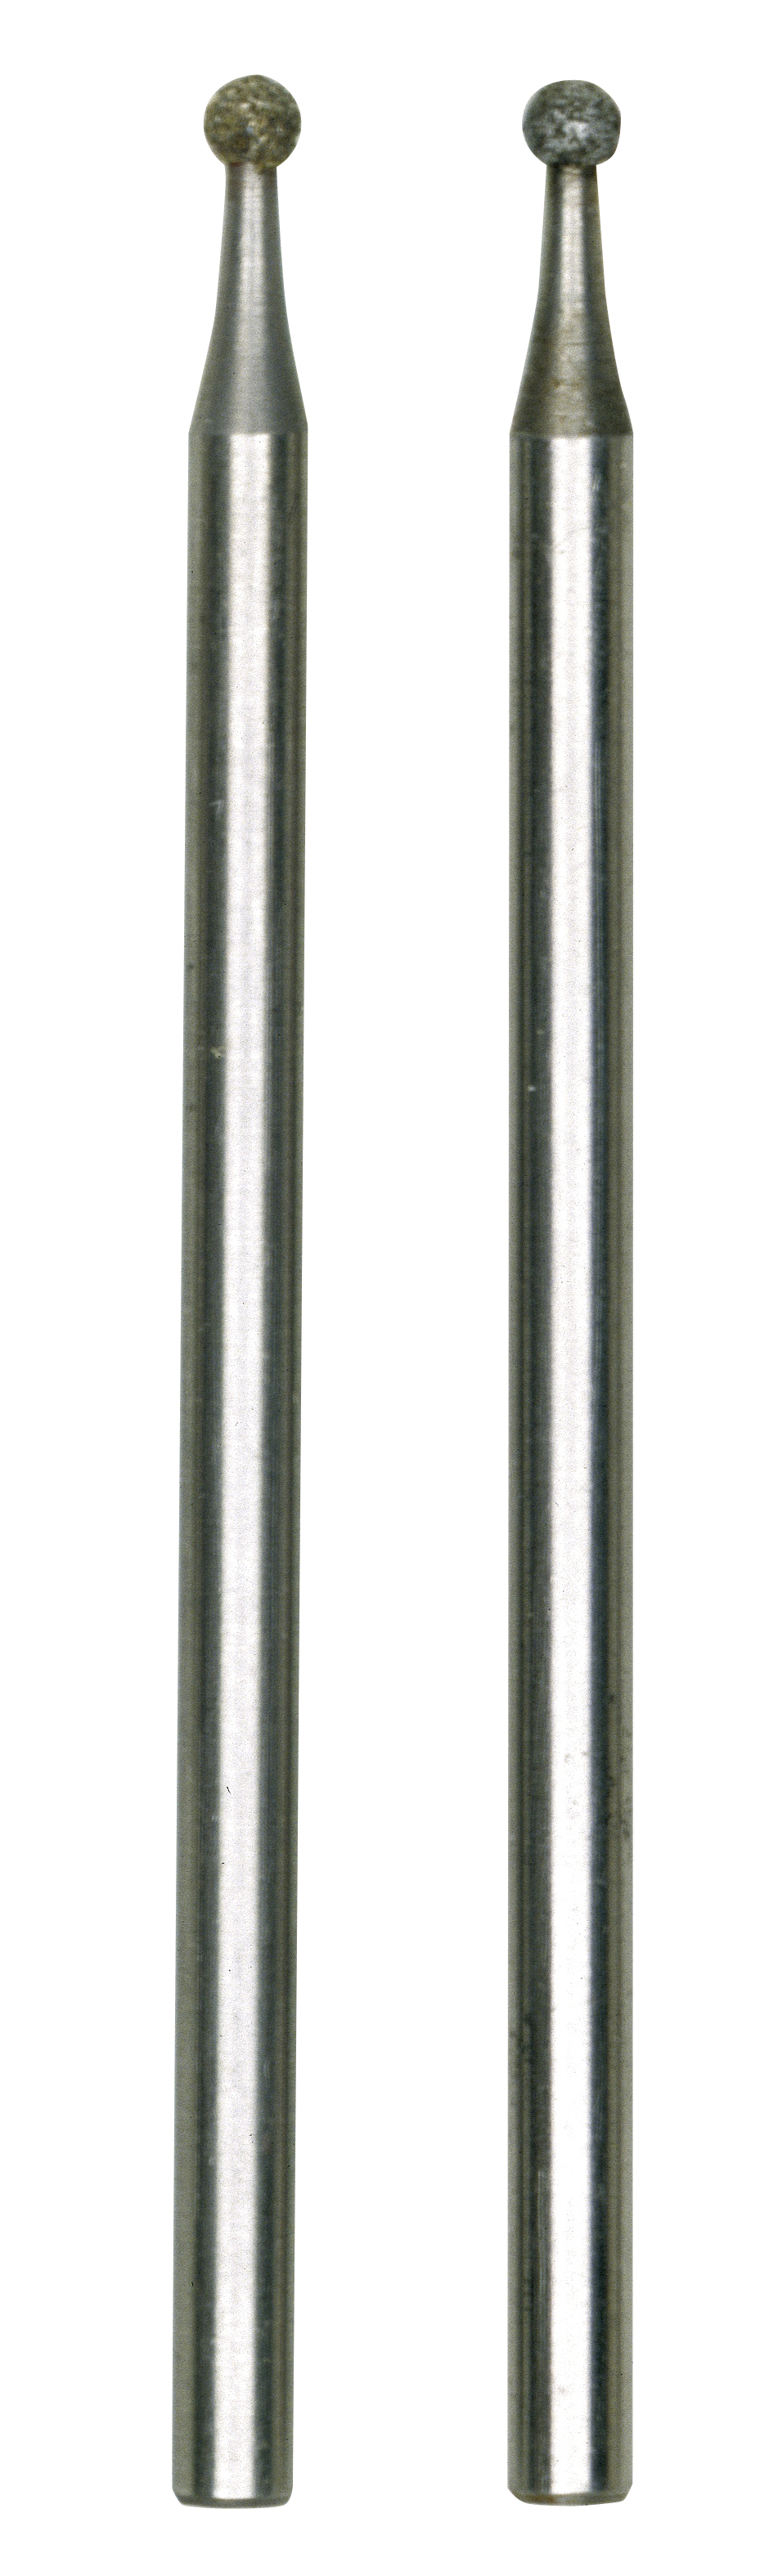 28212 Kugel 2 Stück 1,0 mm Proxxon Diamantschleifstifte 